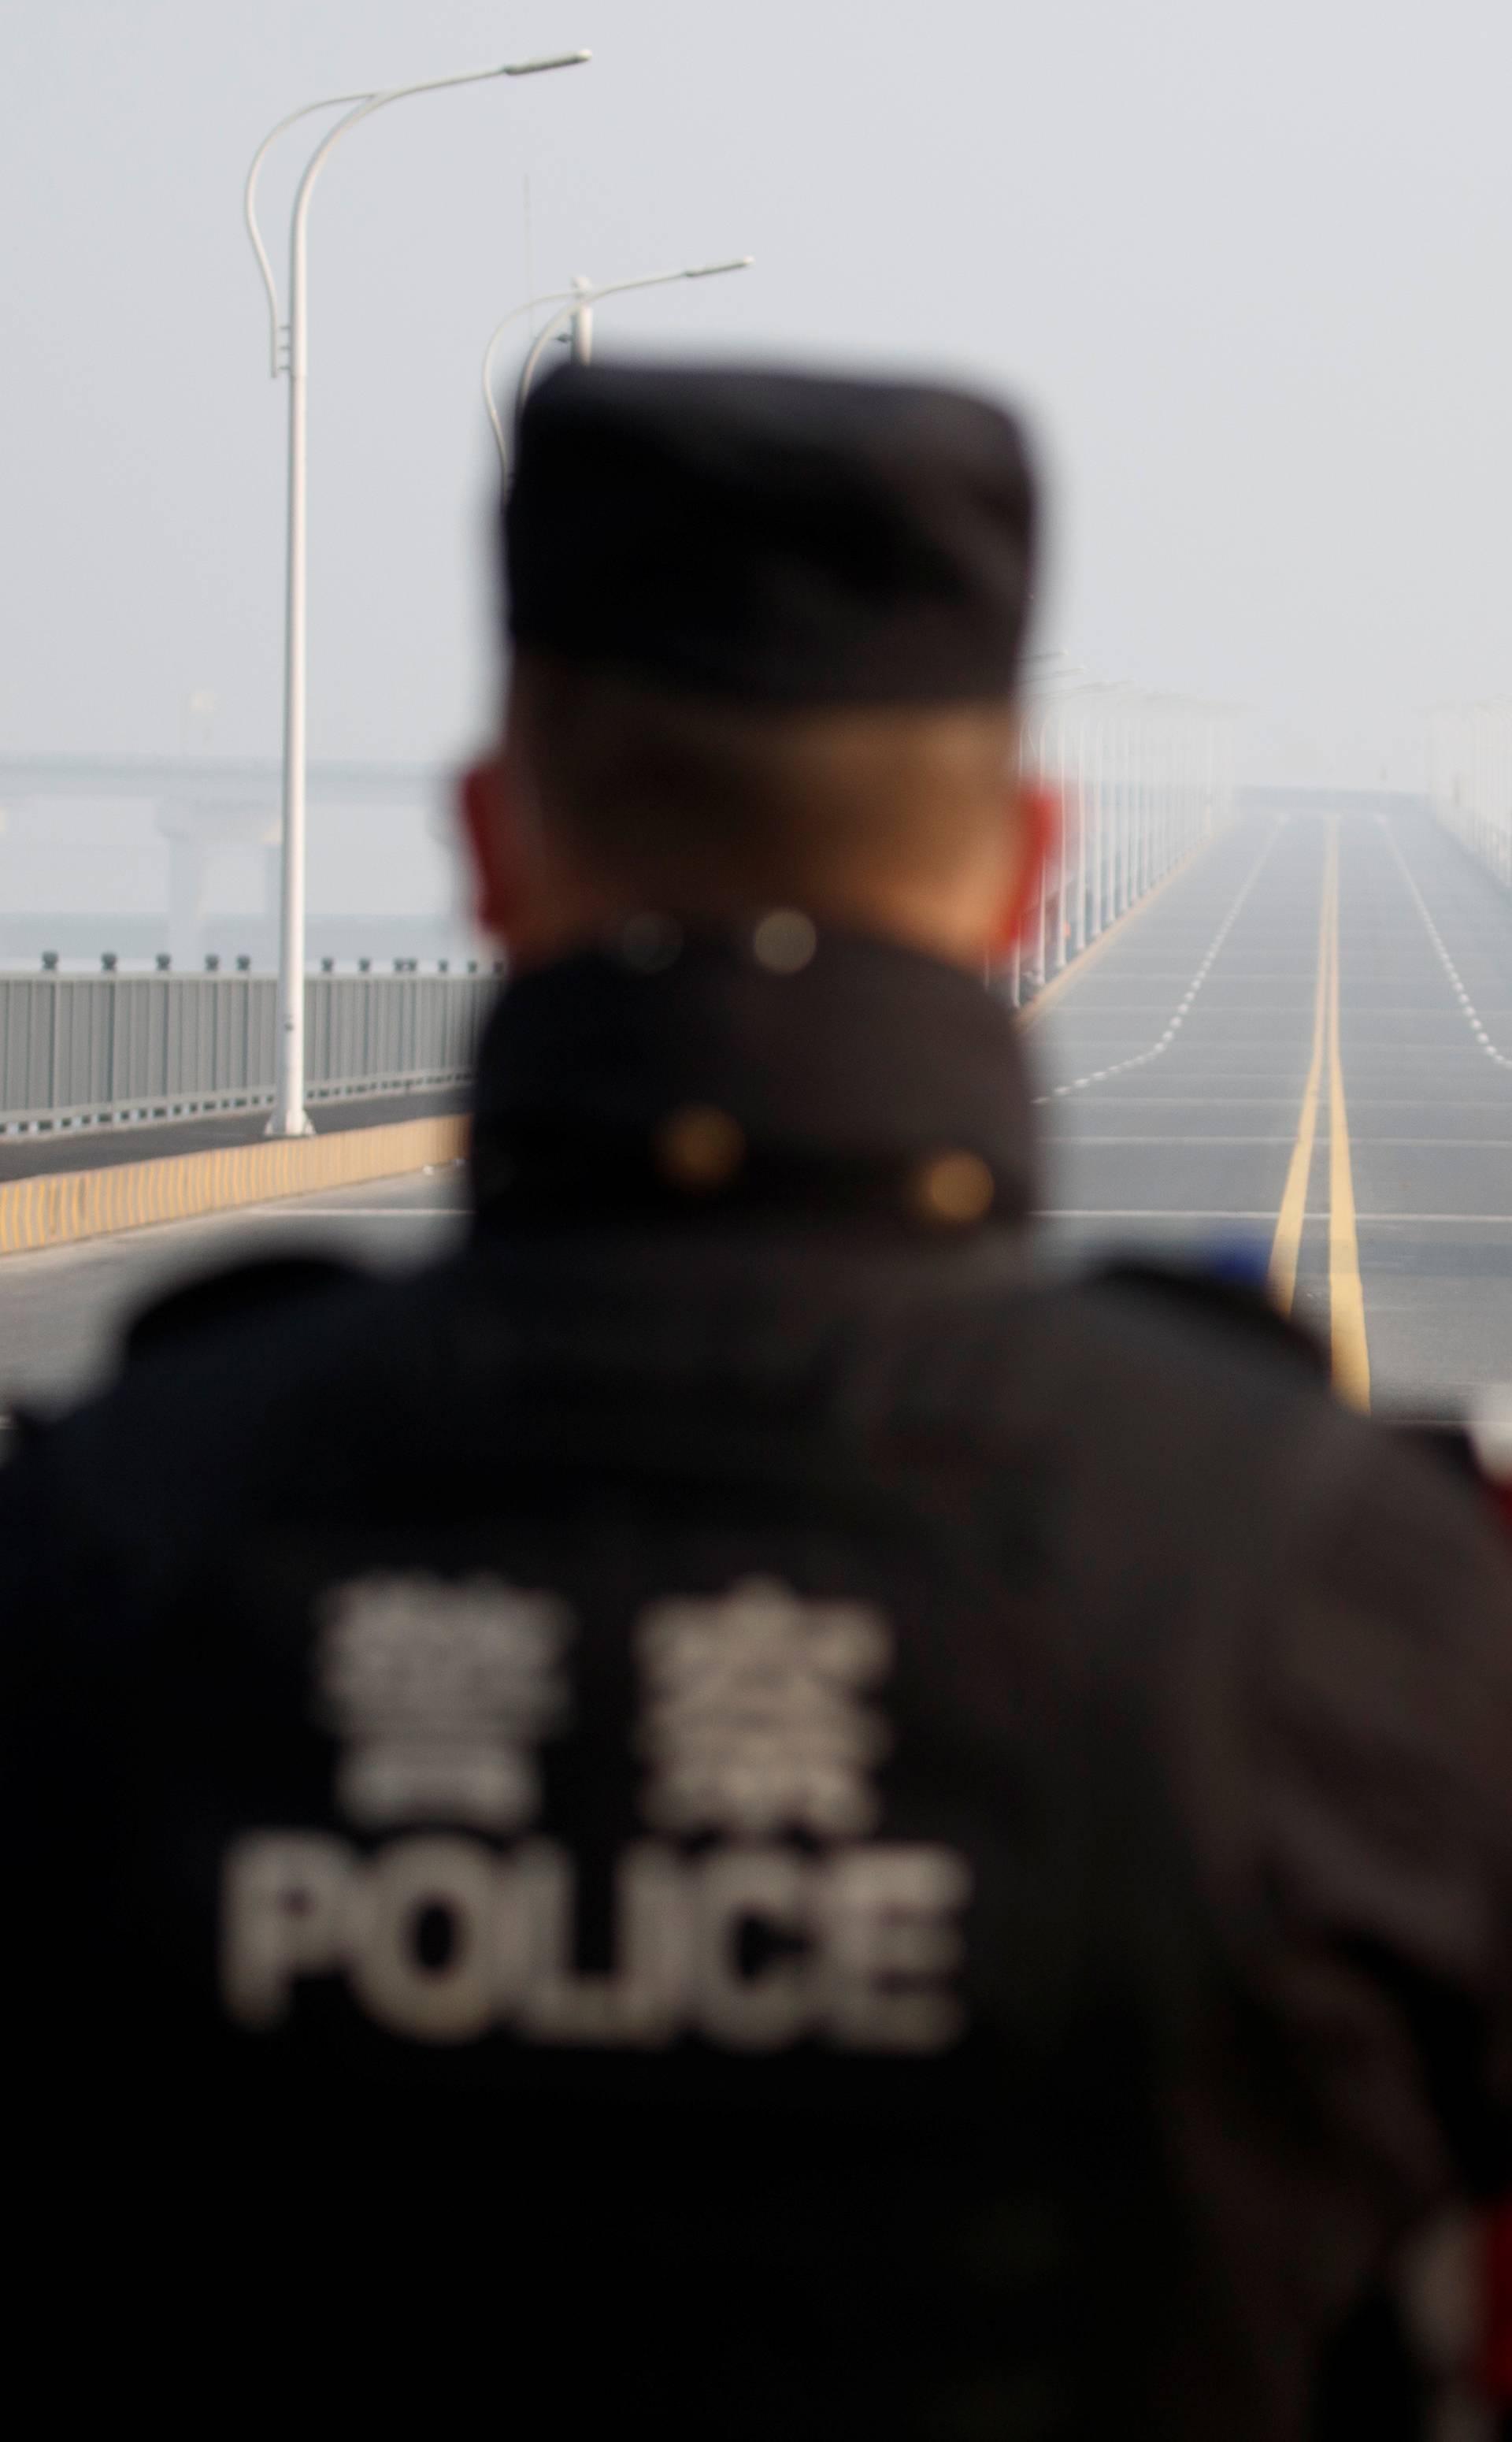 A man arriving from Hubei province approaches a checkpoint at the Jiujiang Yangtze River Bridge in Jiujiang